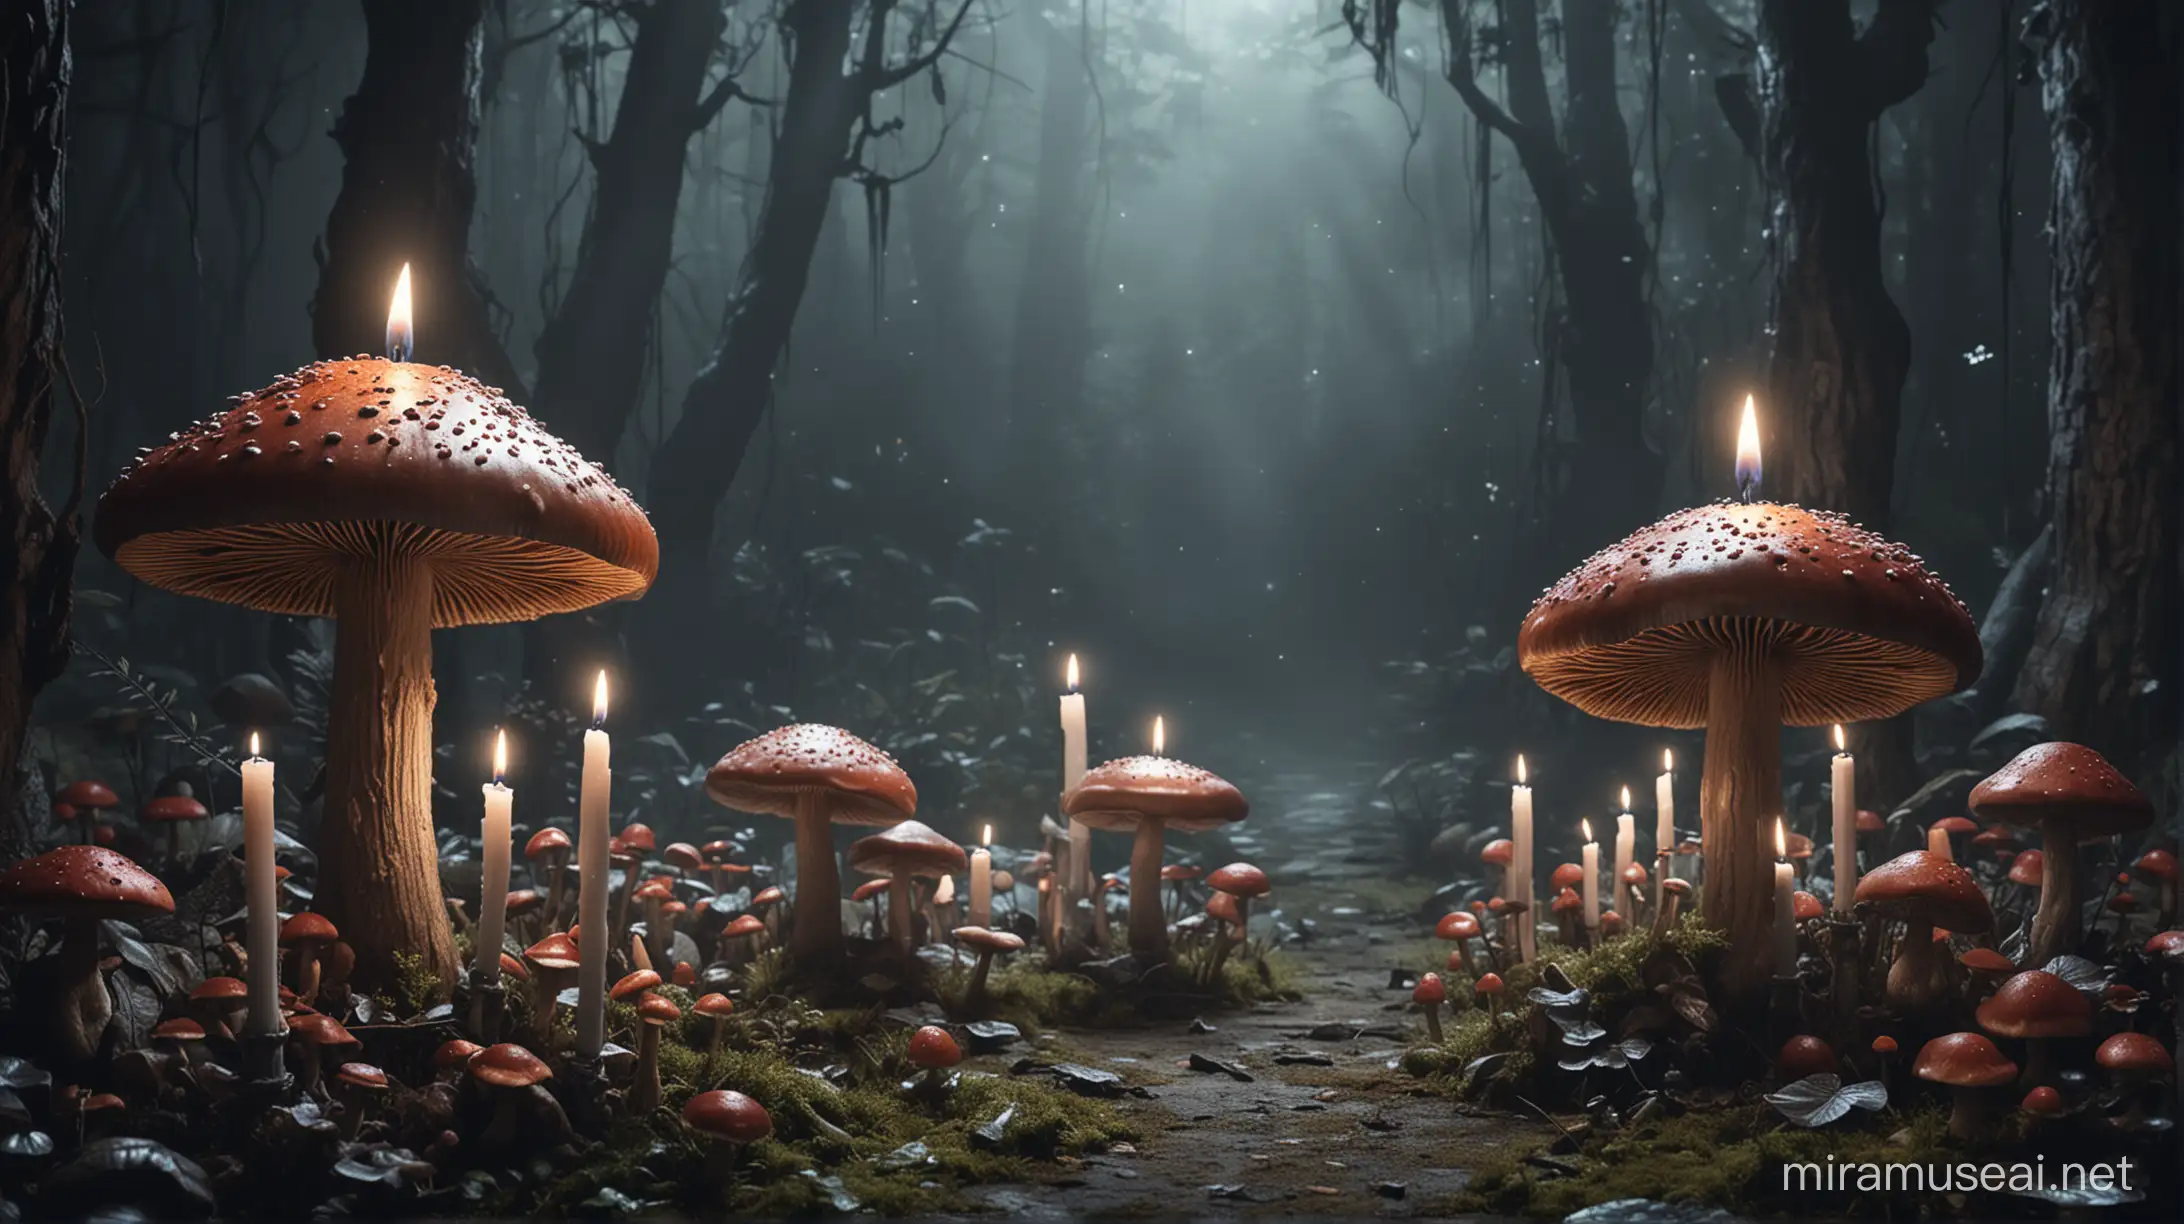 Enchanted Dark Wonderland Fantasy Mushrooms and Candles